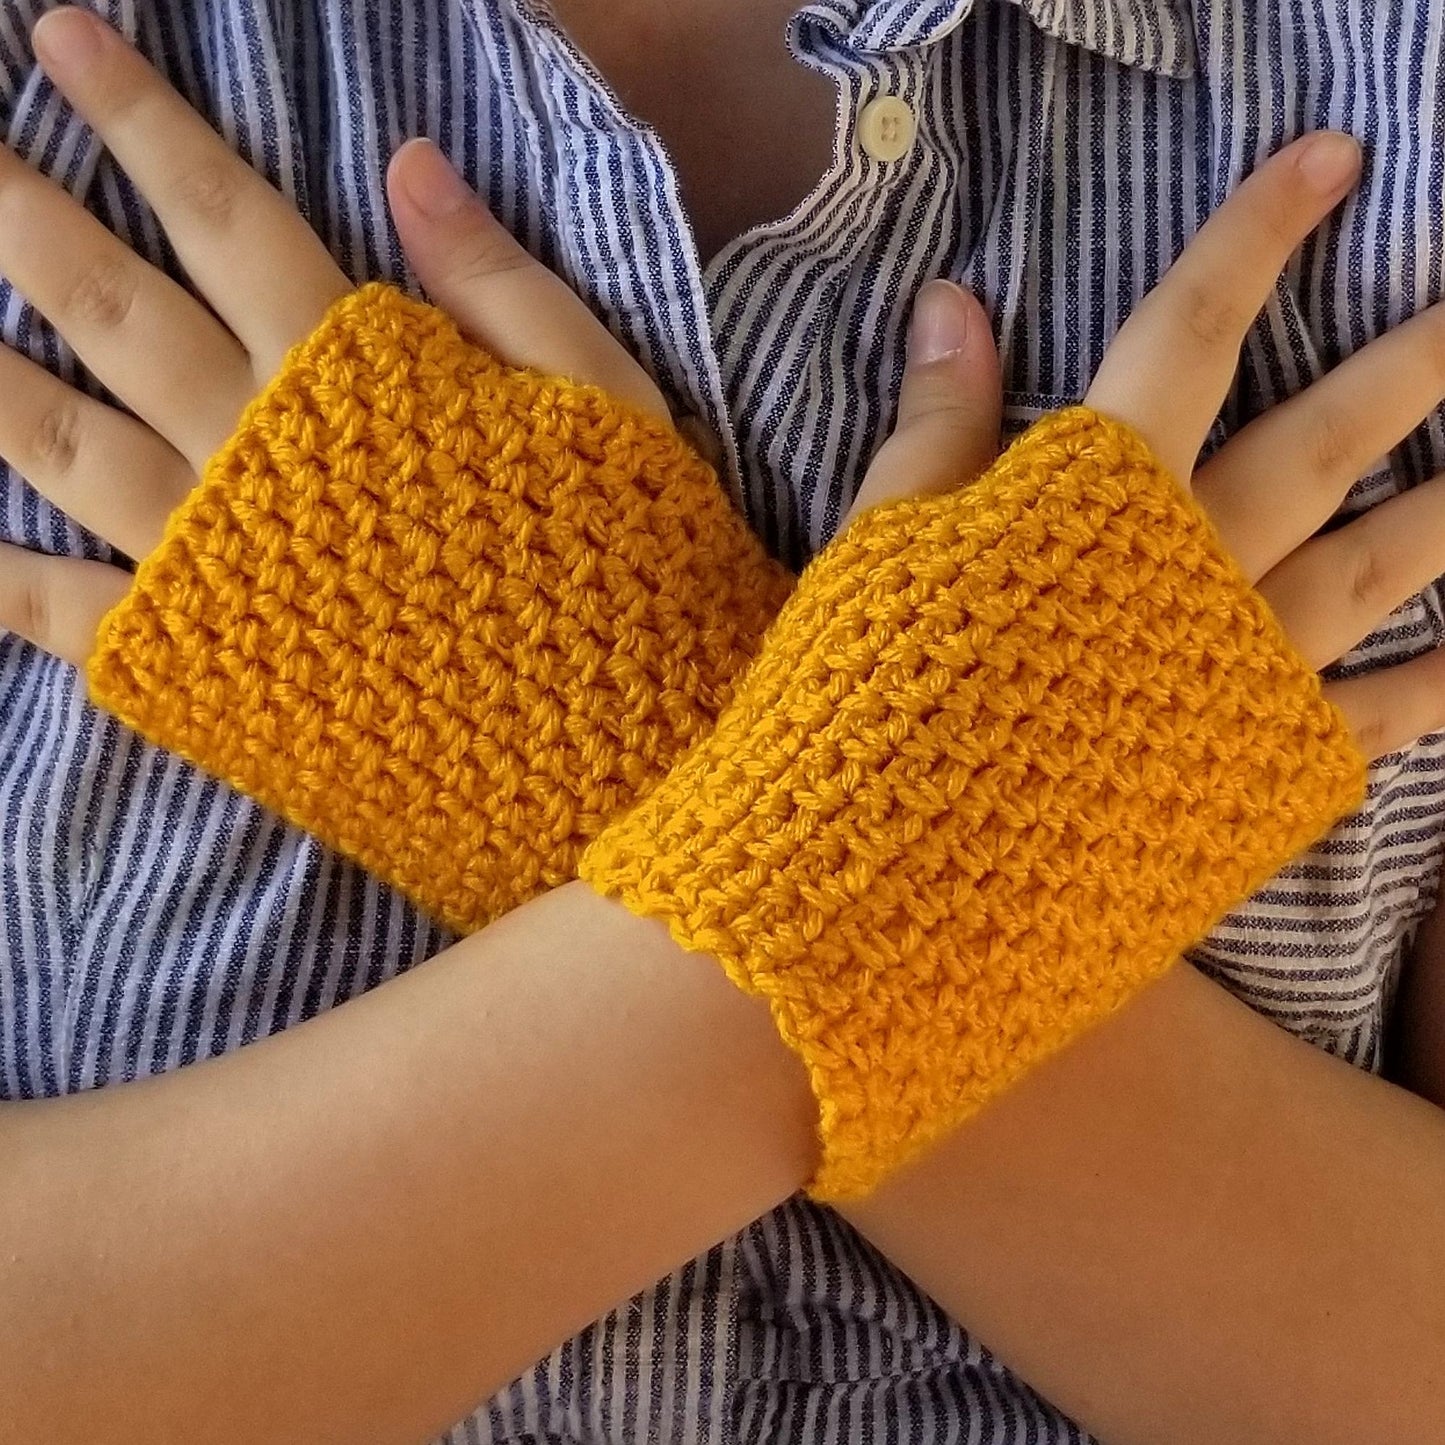 Woven Fingerless Gloves Crochet Pattern PDF